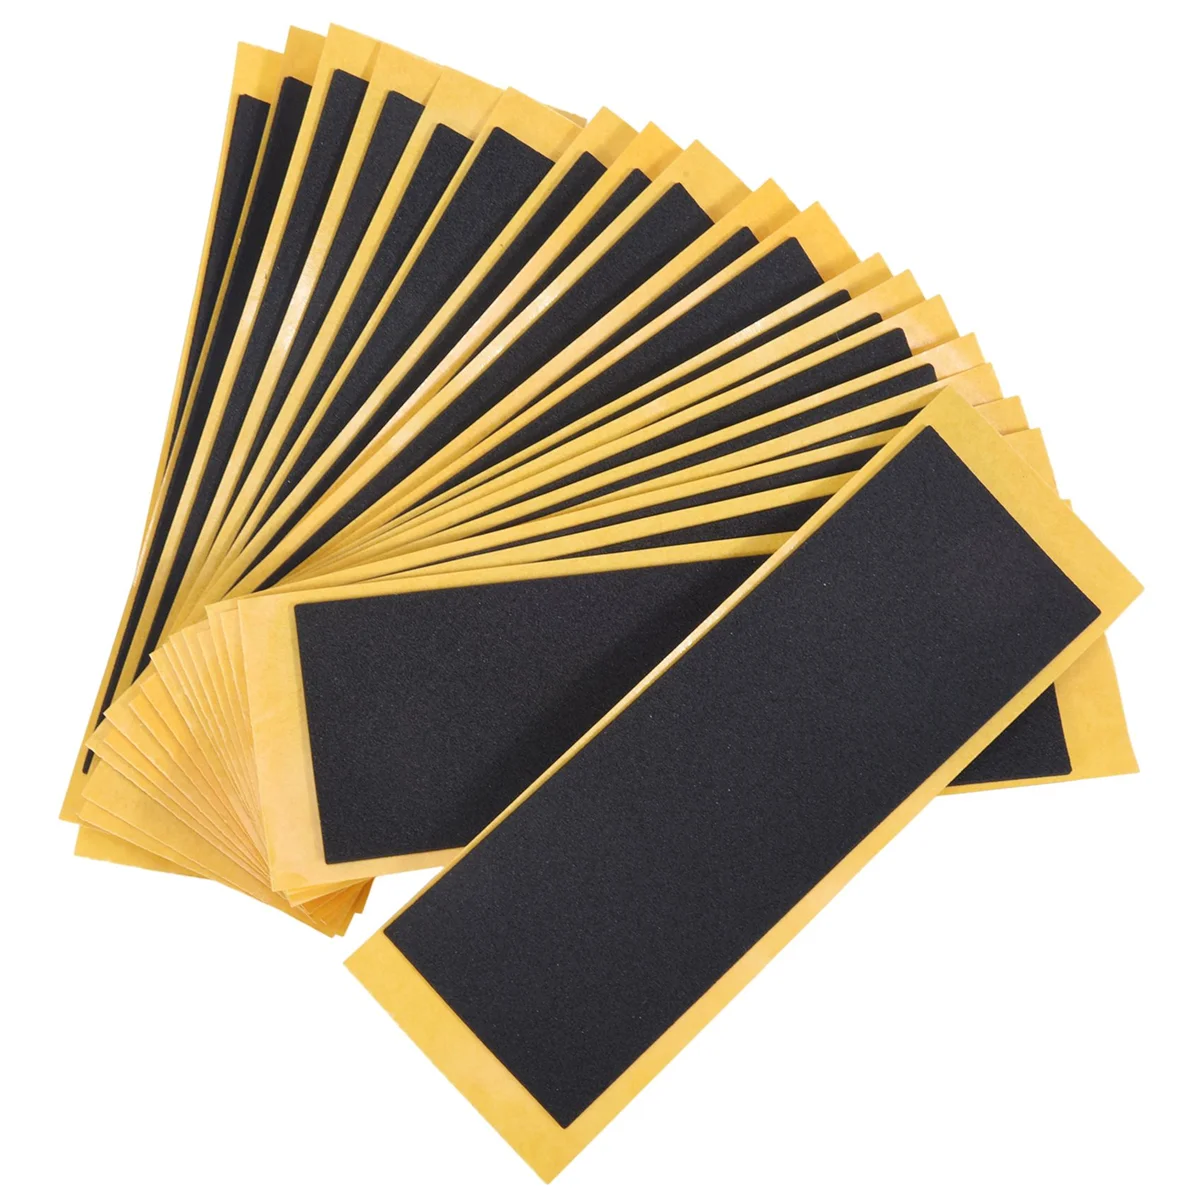 20 pz/lotto Black Fingerboard Deck adesivi con nastro non tagliato adesivi con nastro adesivo in schiuma nera 38mm x 110mm